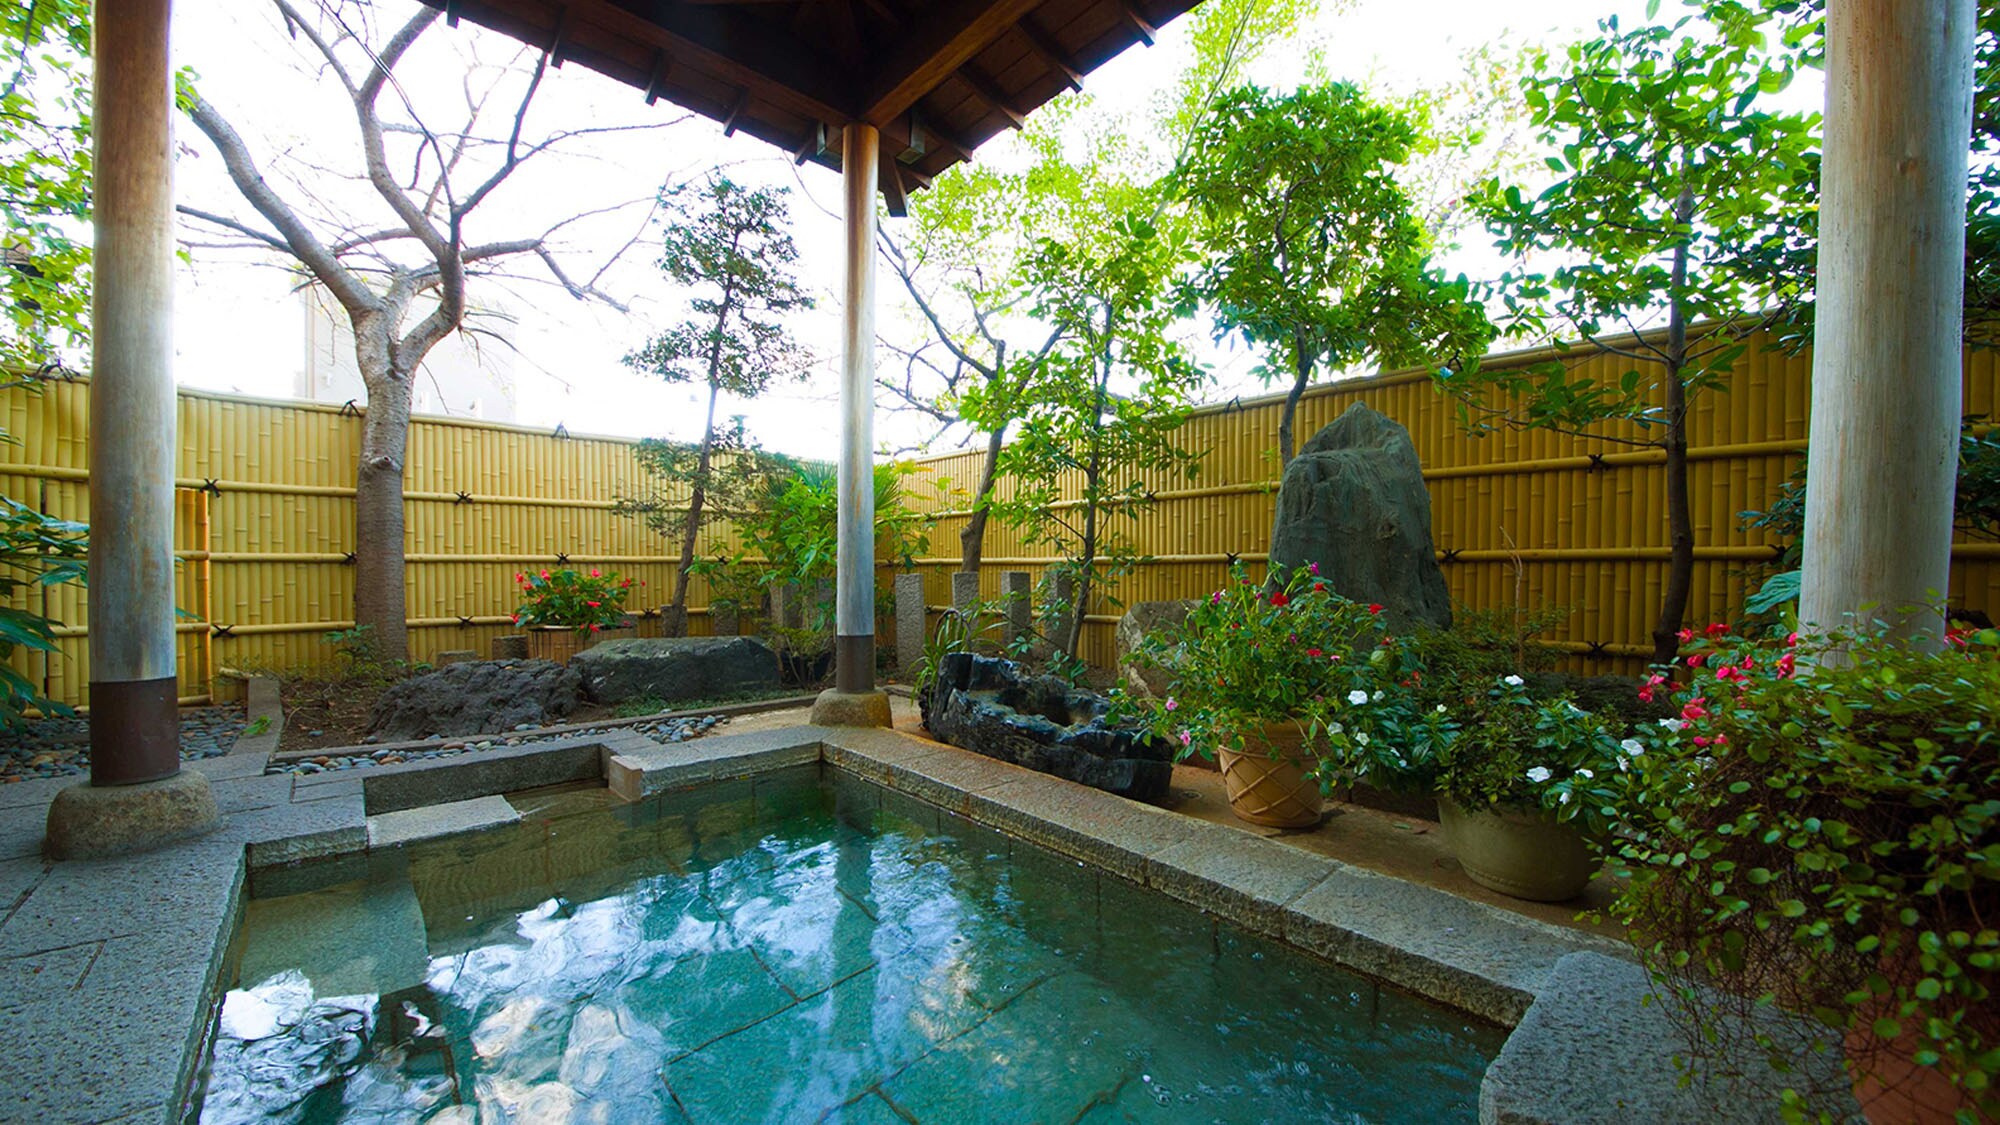 ■ Garden open-air bath ■